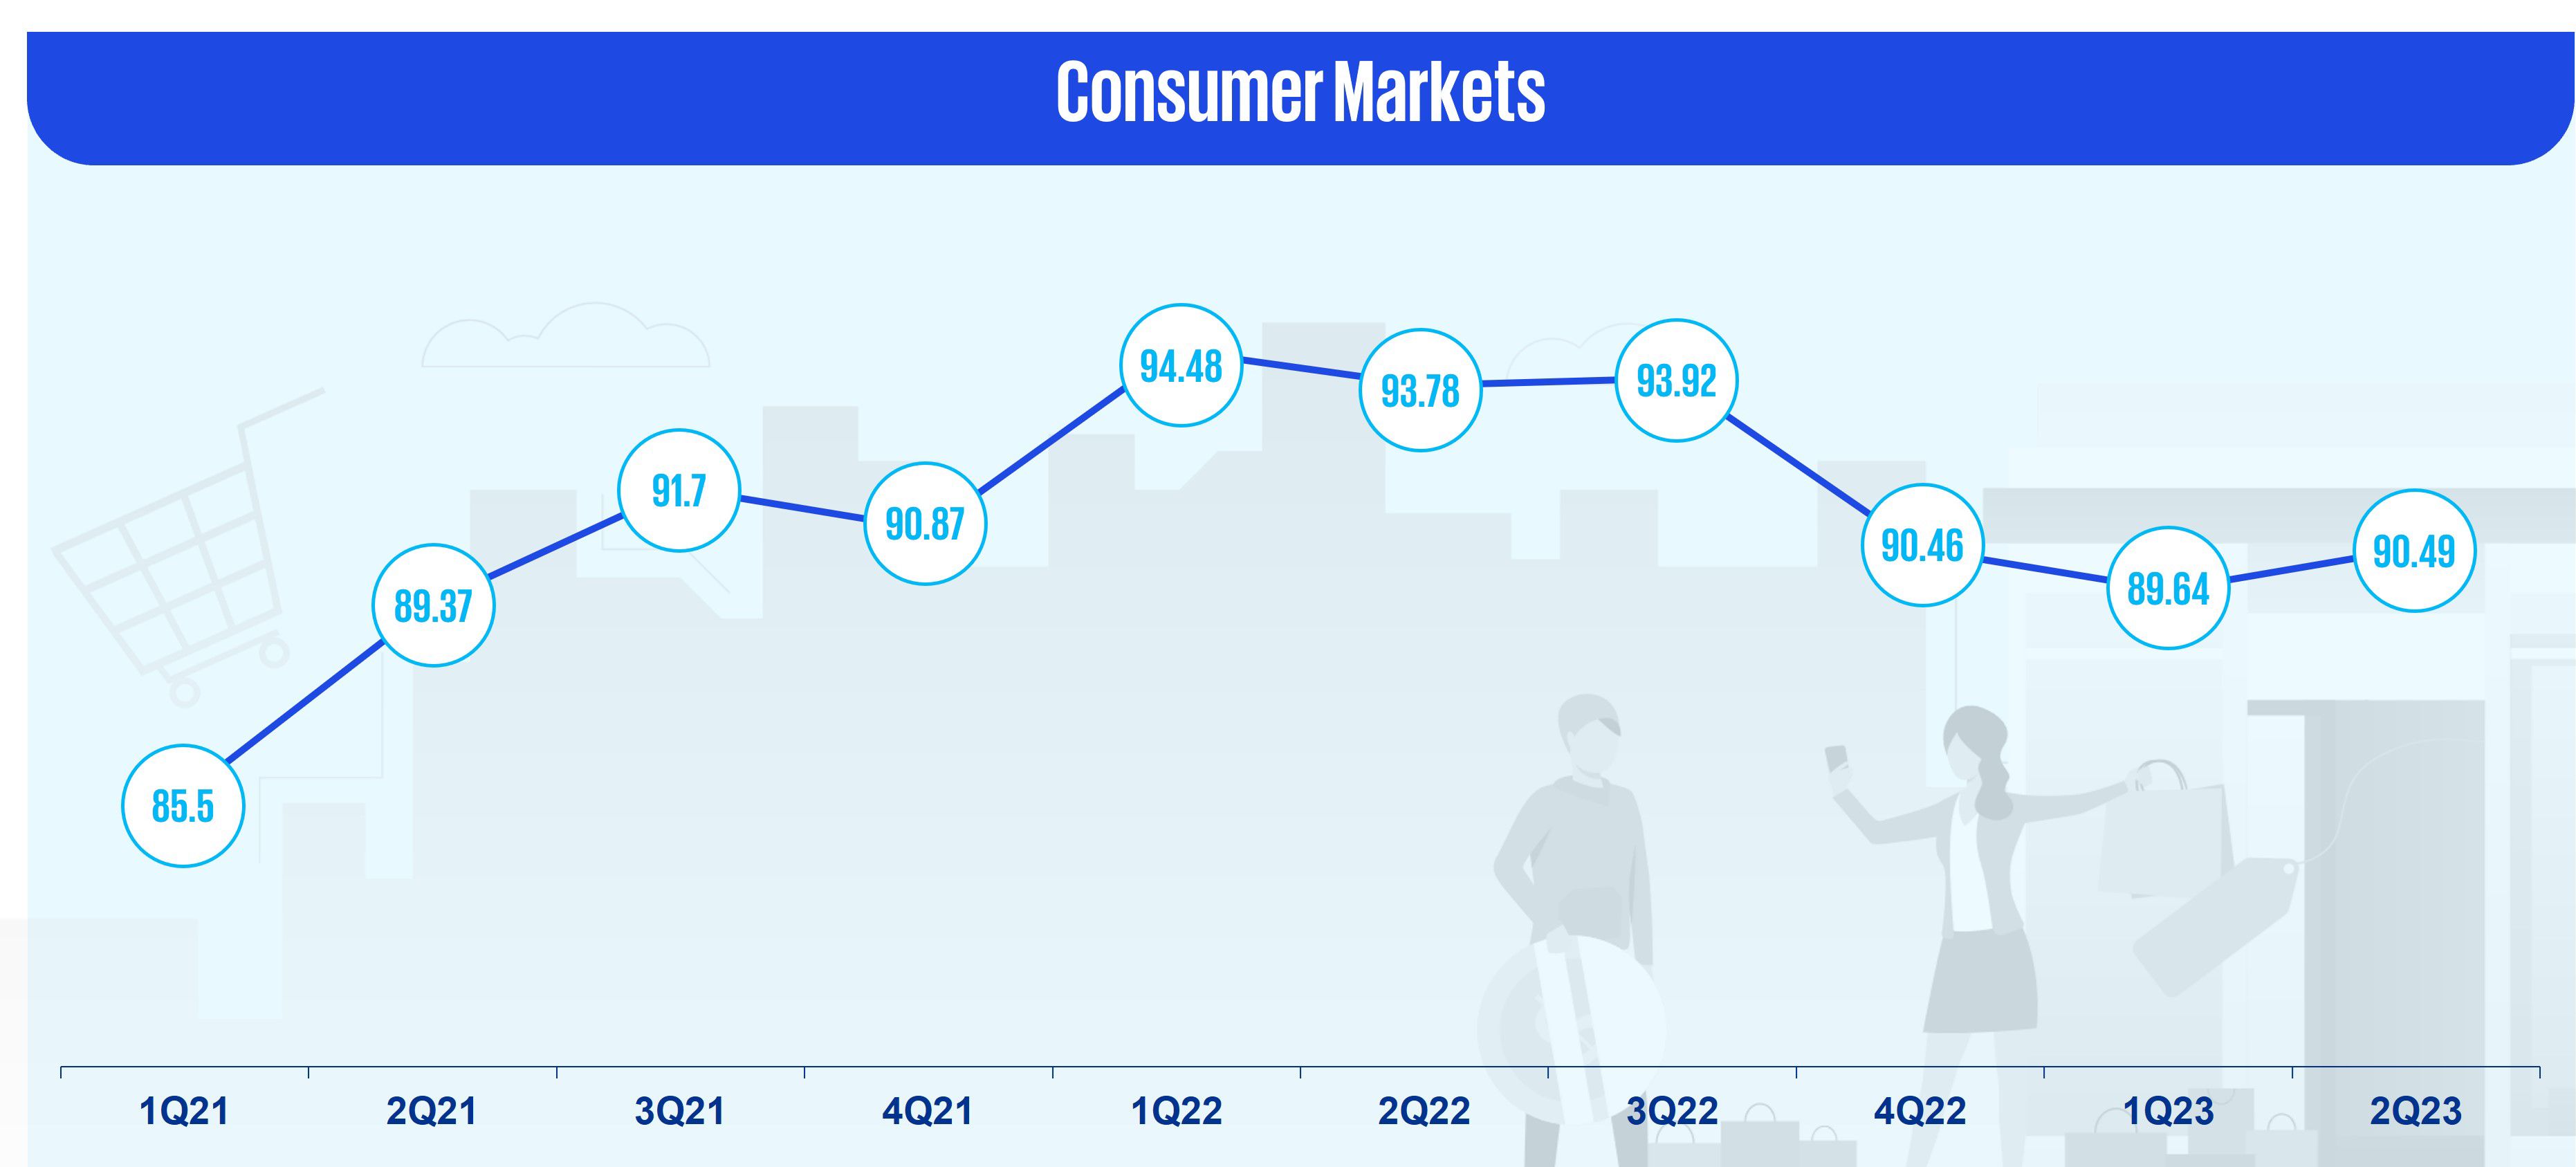 Consumer markets